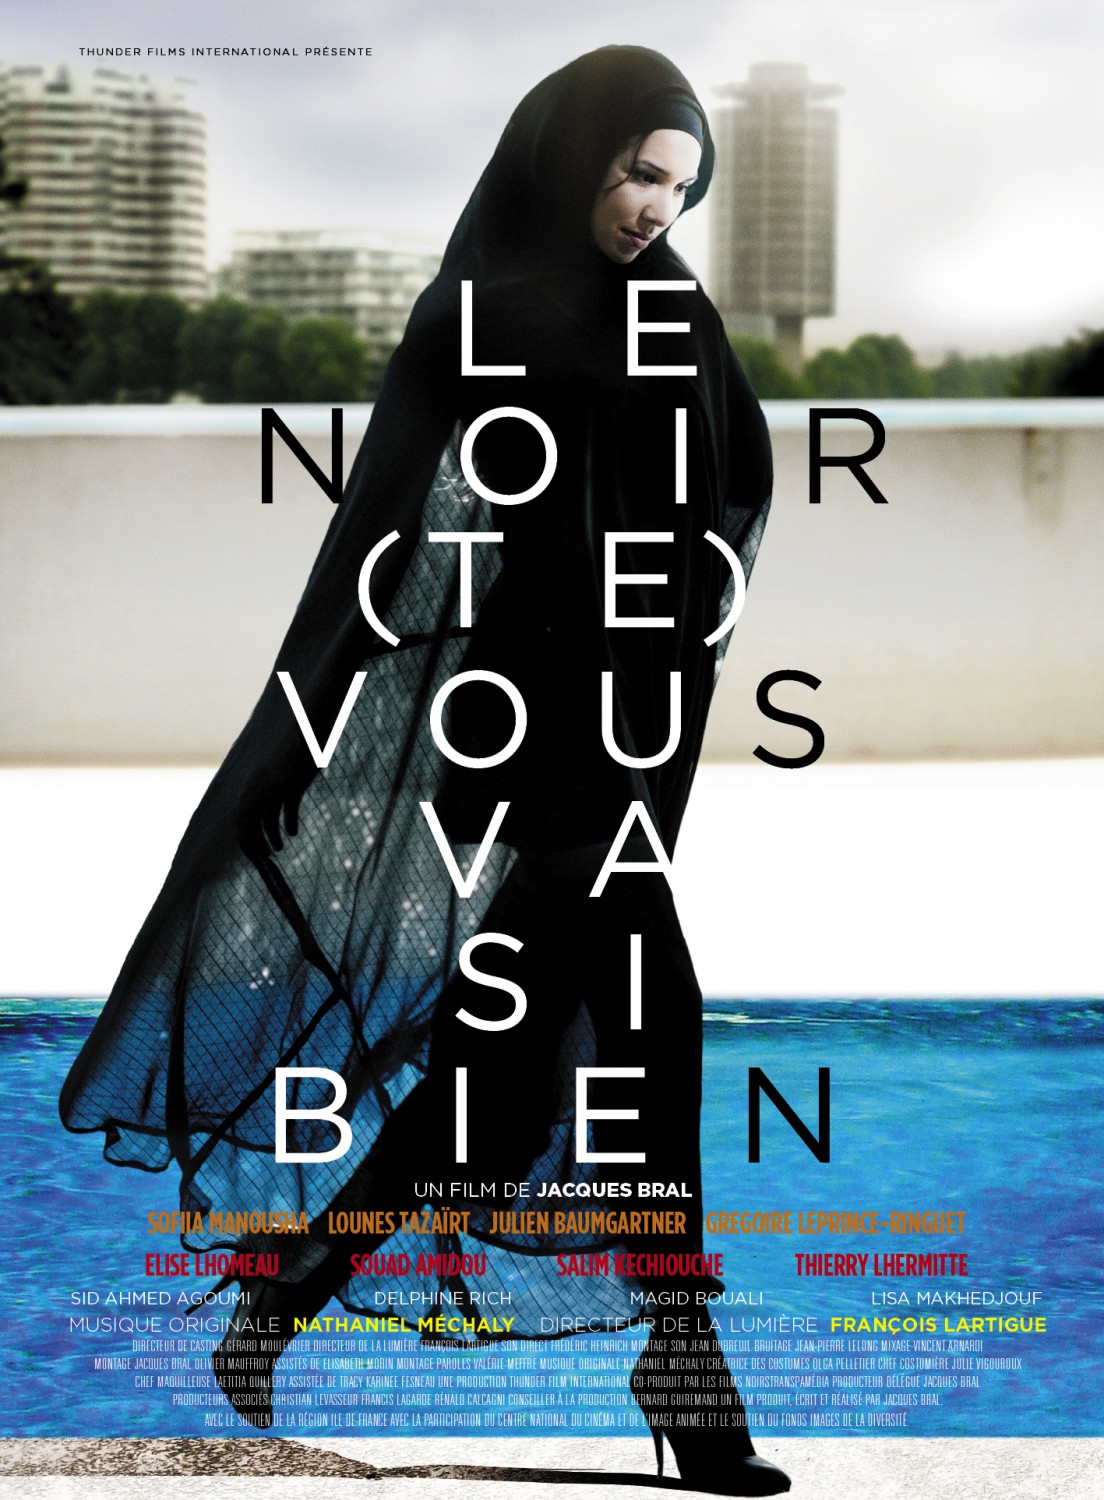 Extra Large Movie Poster Image for Le noir (te) vous va si bien 